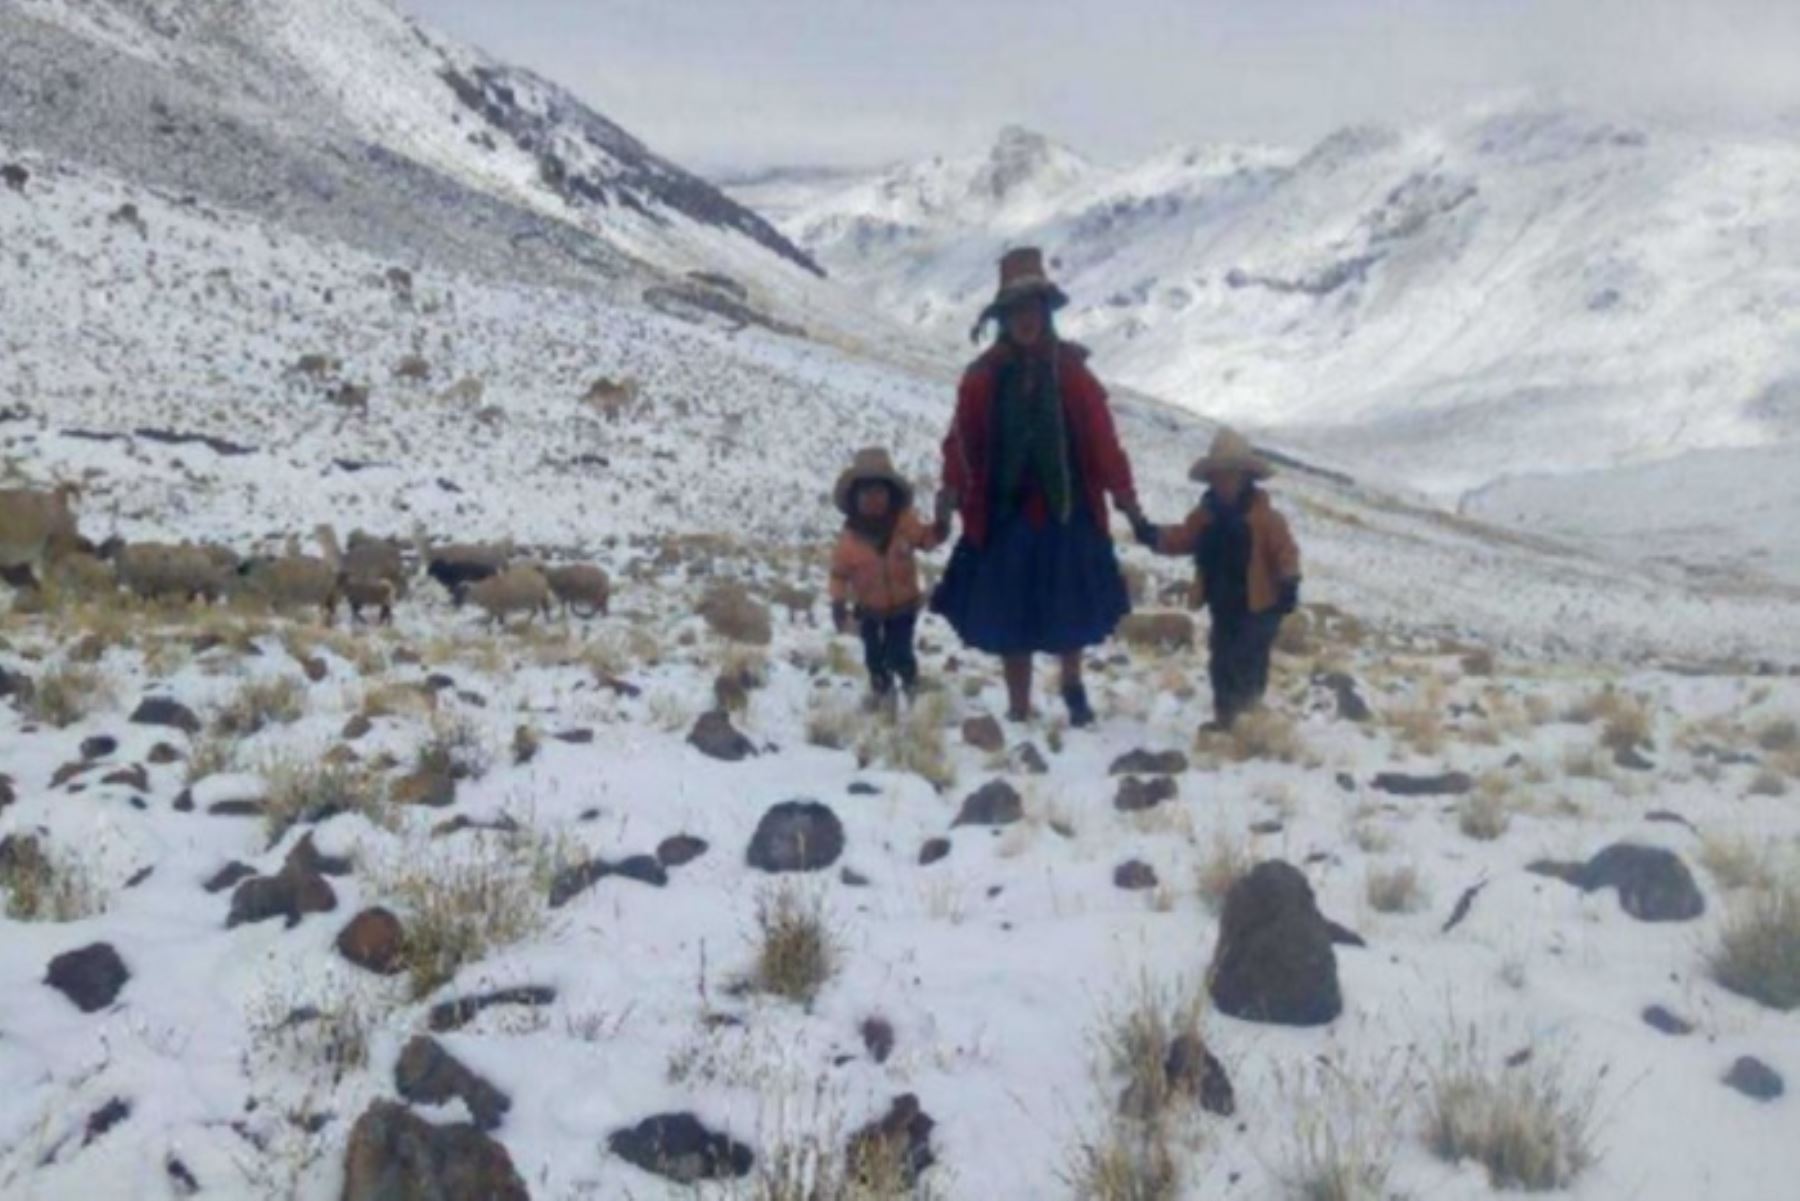 Localidades ubicadas en zonas andinas soportarán bajas temperaturas extremas, advierte el Senamhi. Foto: ANDINA/difusión.